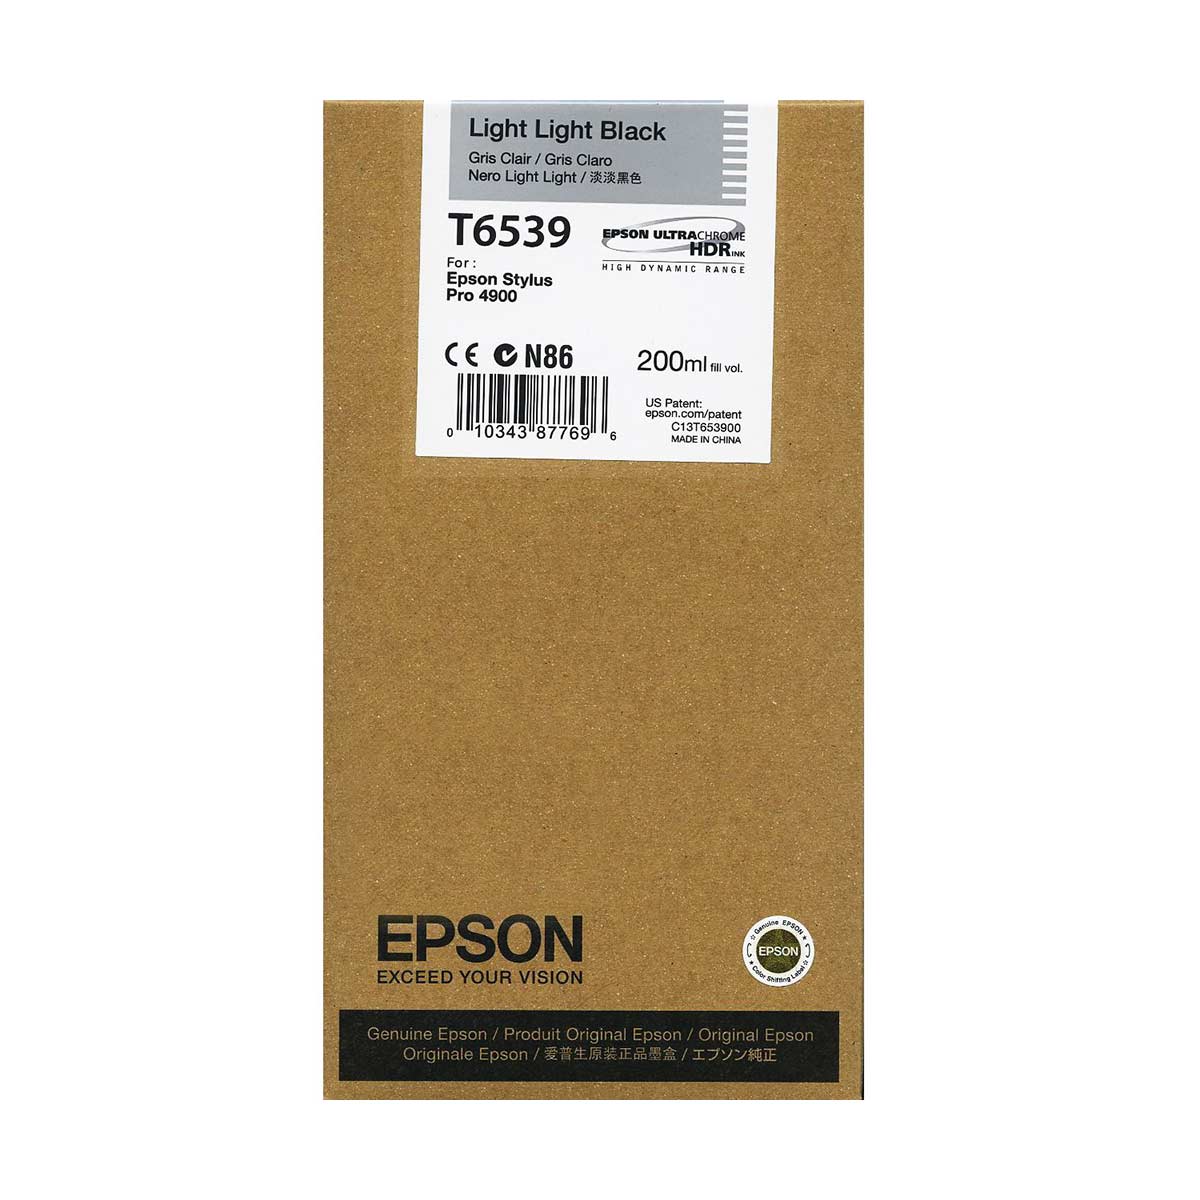 Epson T6539 4900 Ultrachrome Ink HDR 200ml Light Light Black